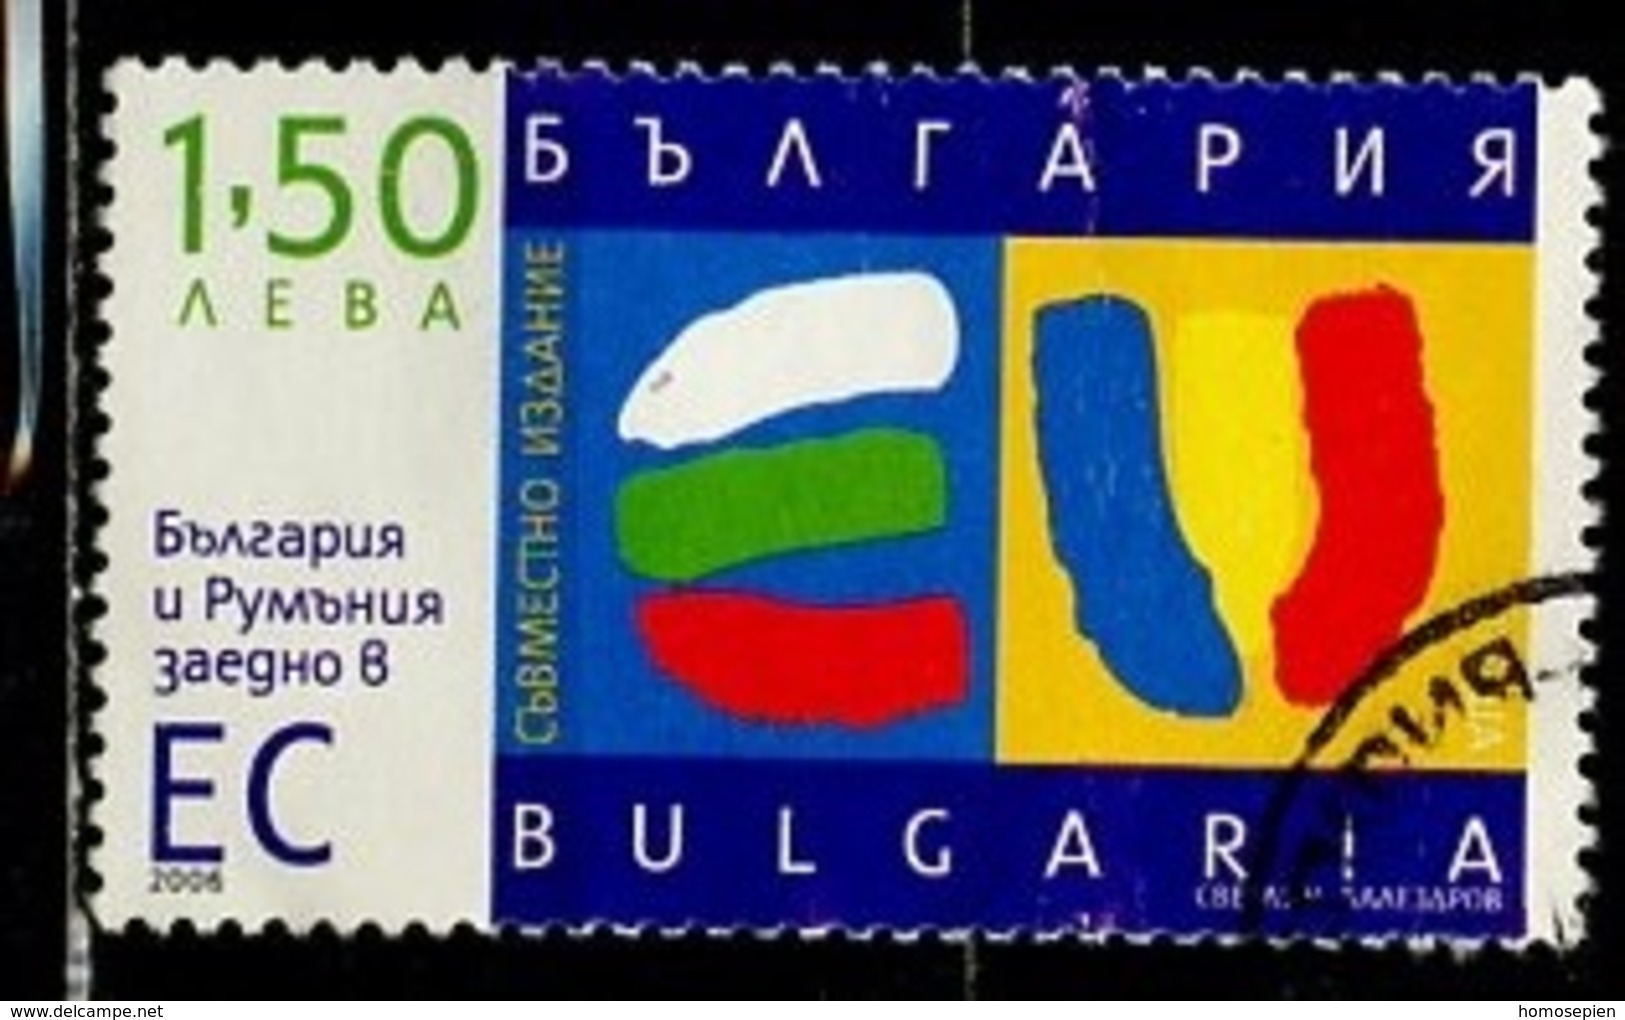 Bulgarie - Bulgarien - Bulgaria 2006 Y&T N°4120 - Michel N°4778 (o) - 1,50l Entrée De La Bulgarie Dans L'UE - Used Stamps